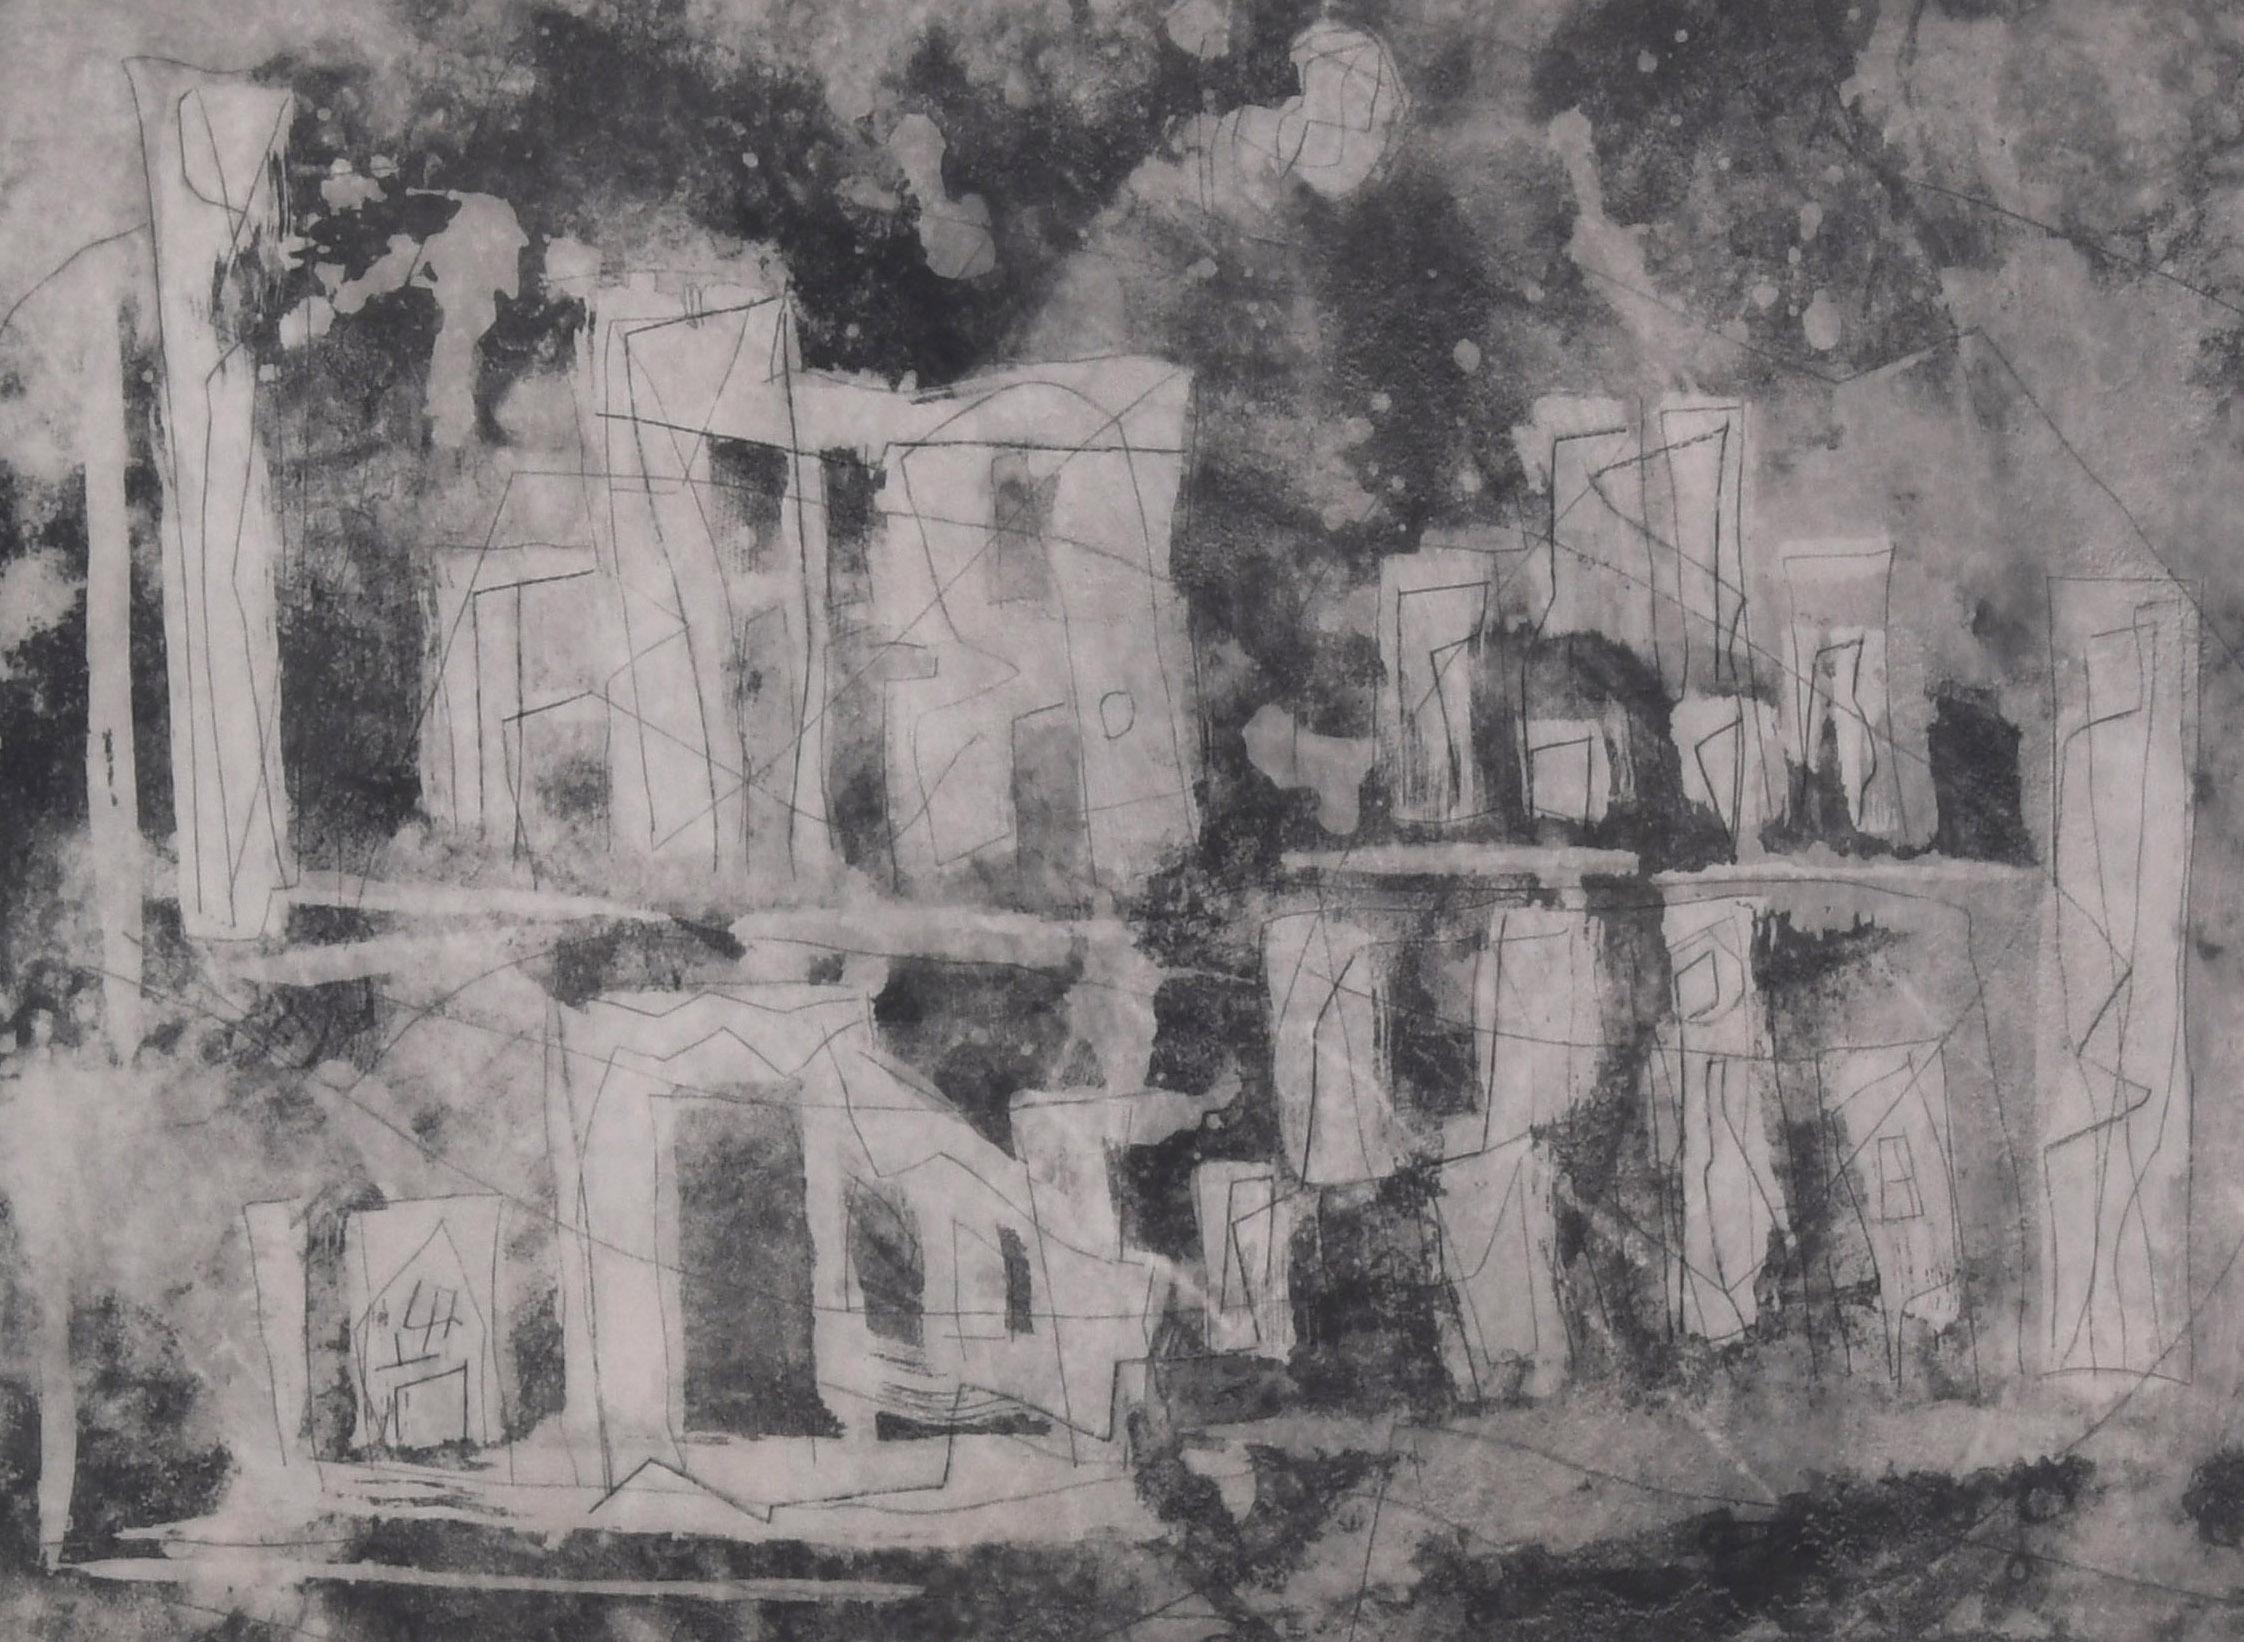 Paysage ancien II (Ville ancienne)
Gravure et pointe sèche, 1953-55
Signé et titré au crayon par l'artiste (voir photos).
Annoté : 